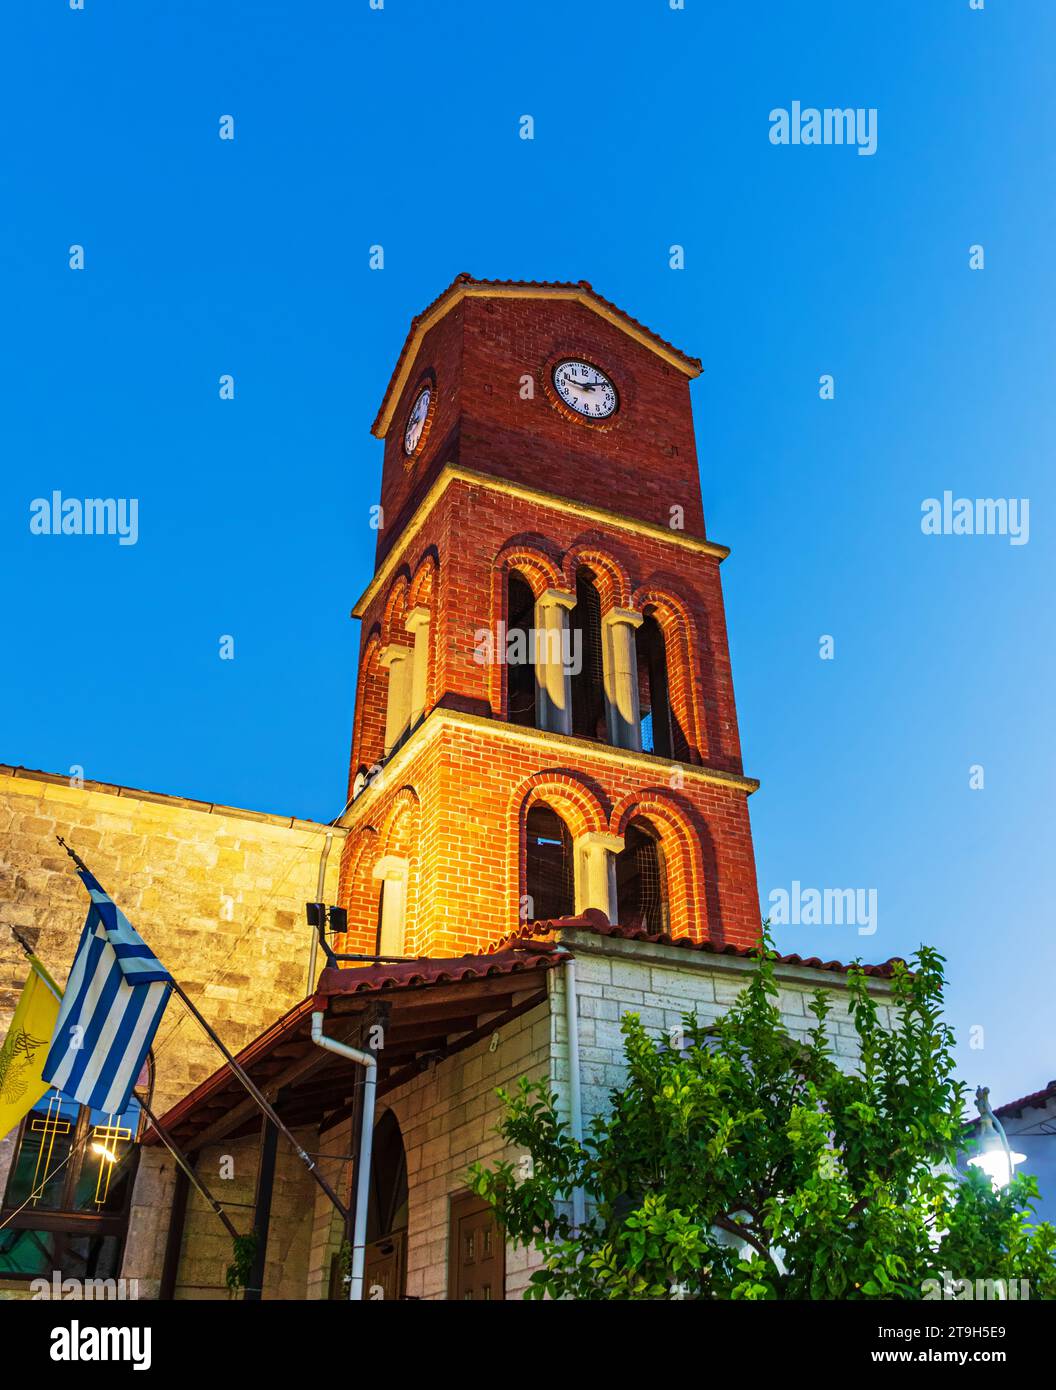 Policrono. La Torre dell'Orologio della Chiesa ortodossa in Grecia. Policrono, Grecia Foto Stock